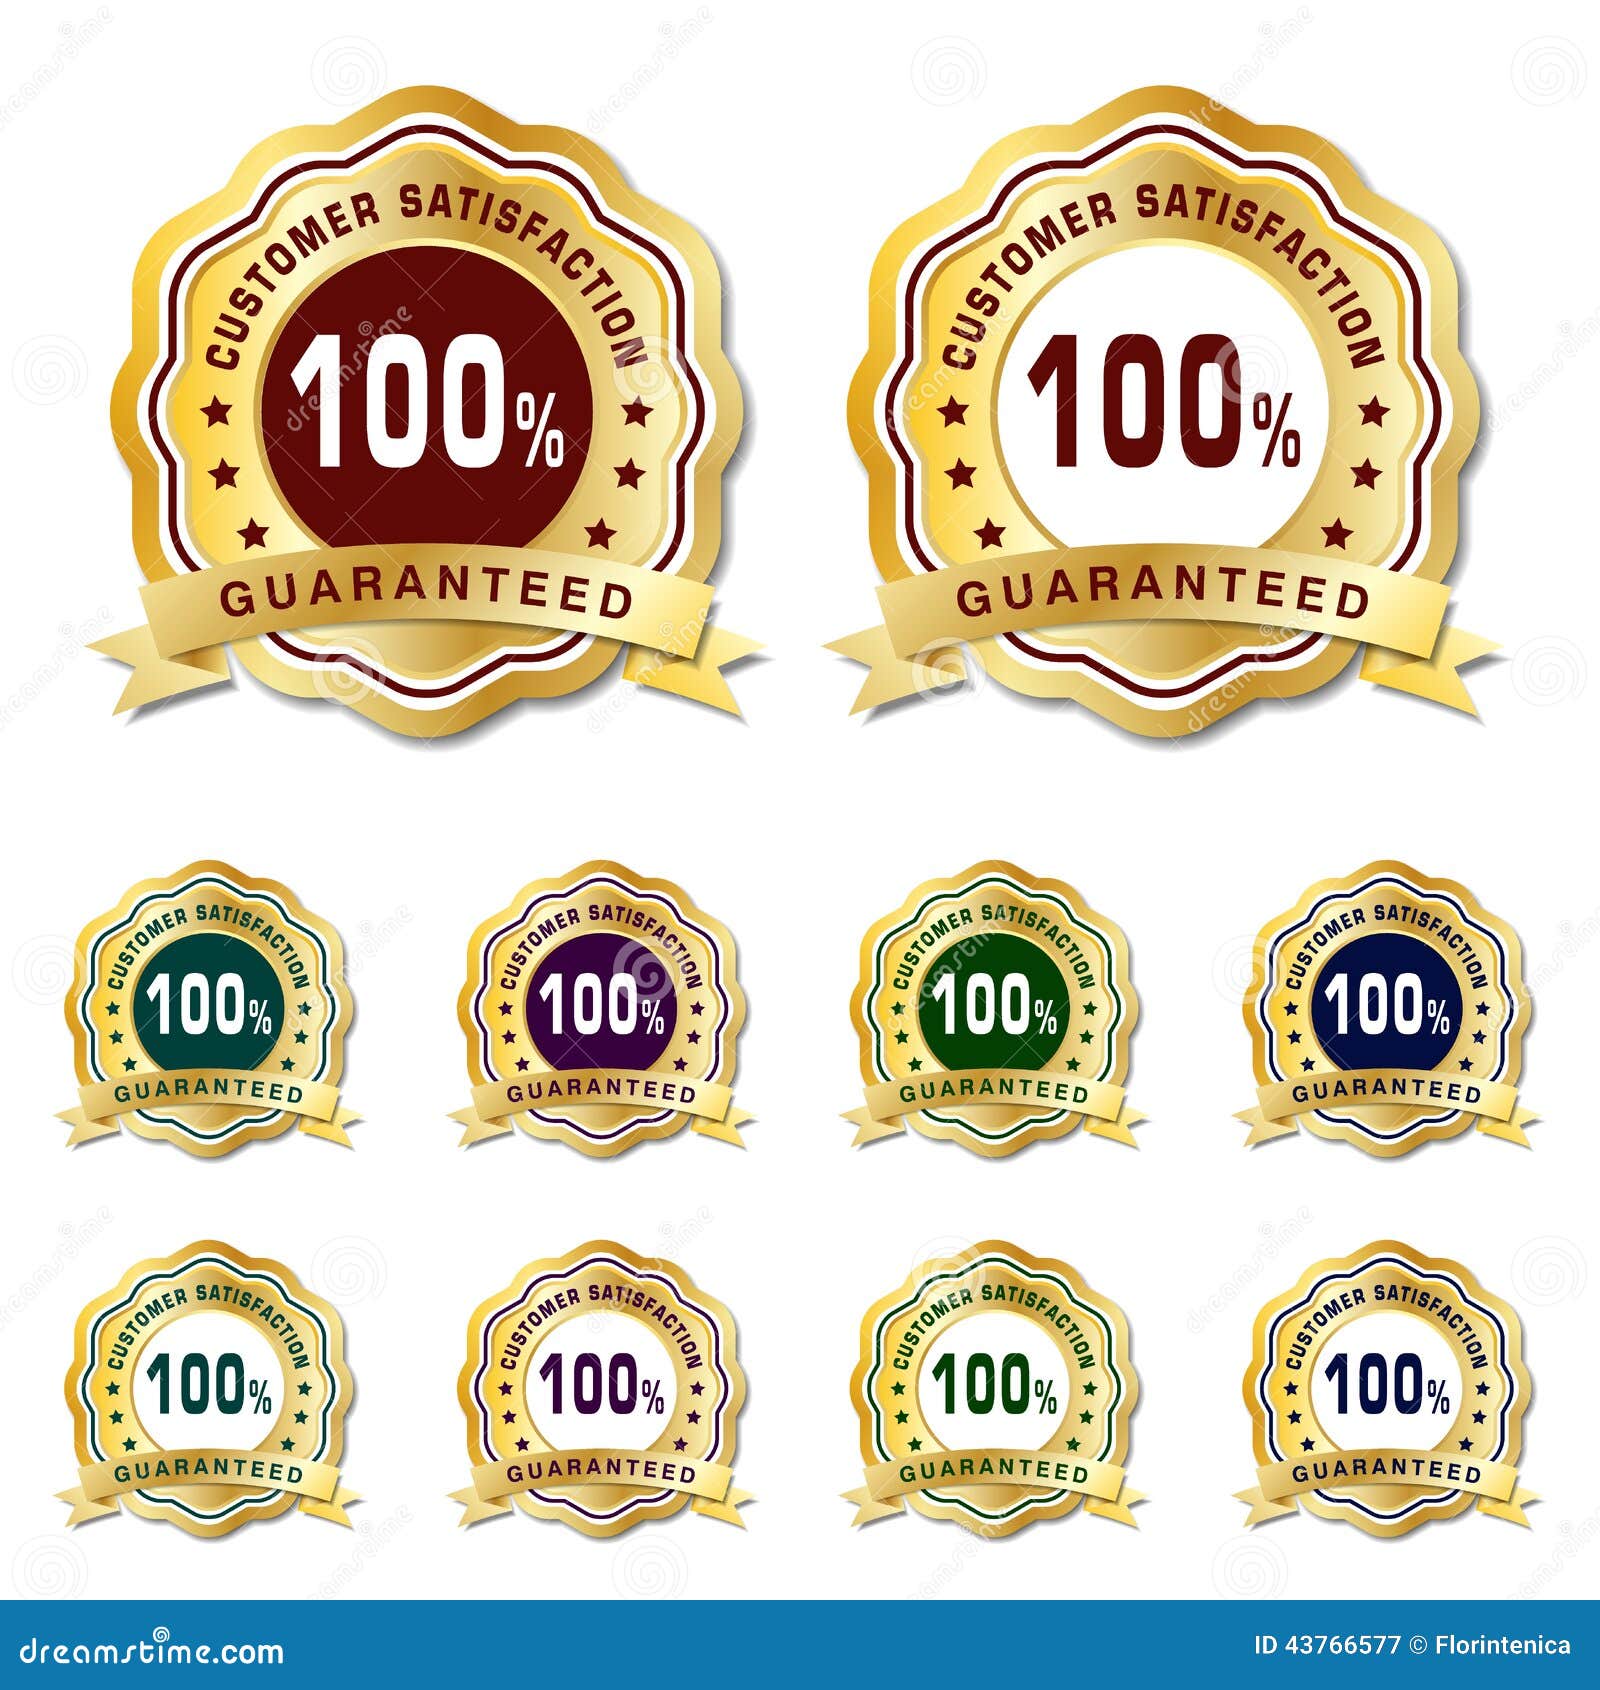 Customer Satisfation Guarantee Golden Badges Stock Vector ...